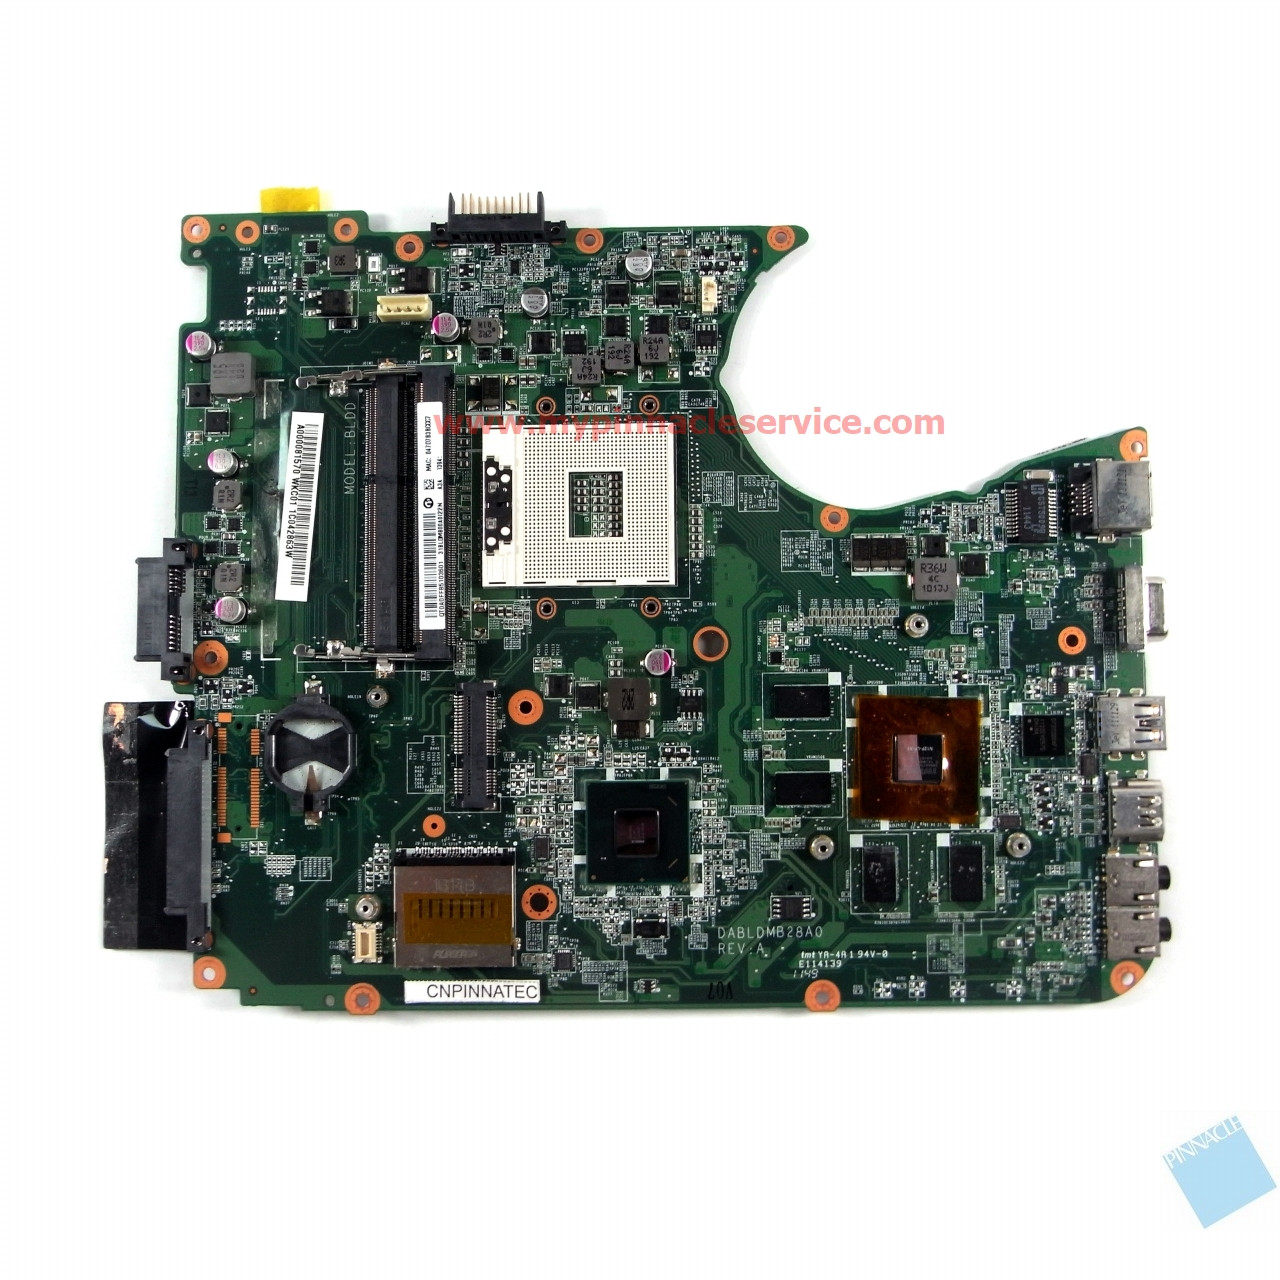 Toshiba Satellite L750 L755 Motherboard - A000081570 DABLDMB28A0 BLDD